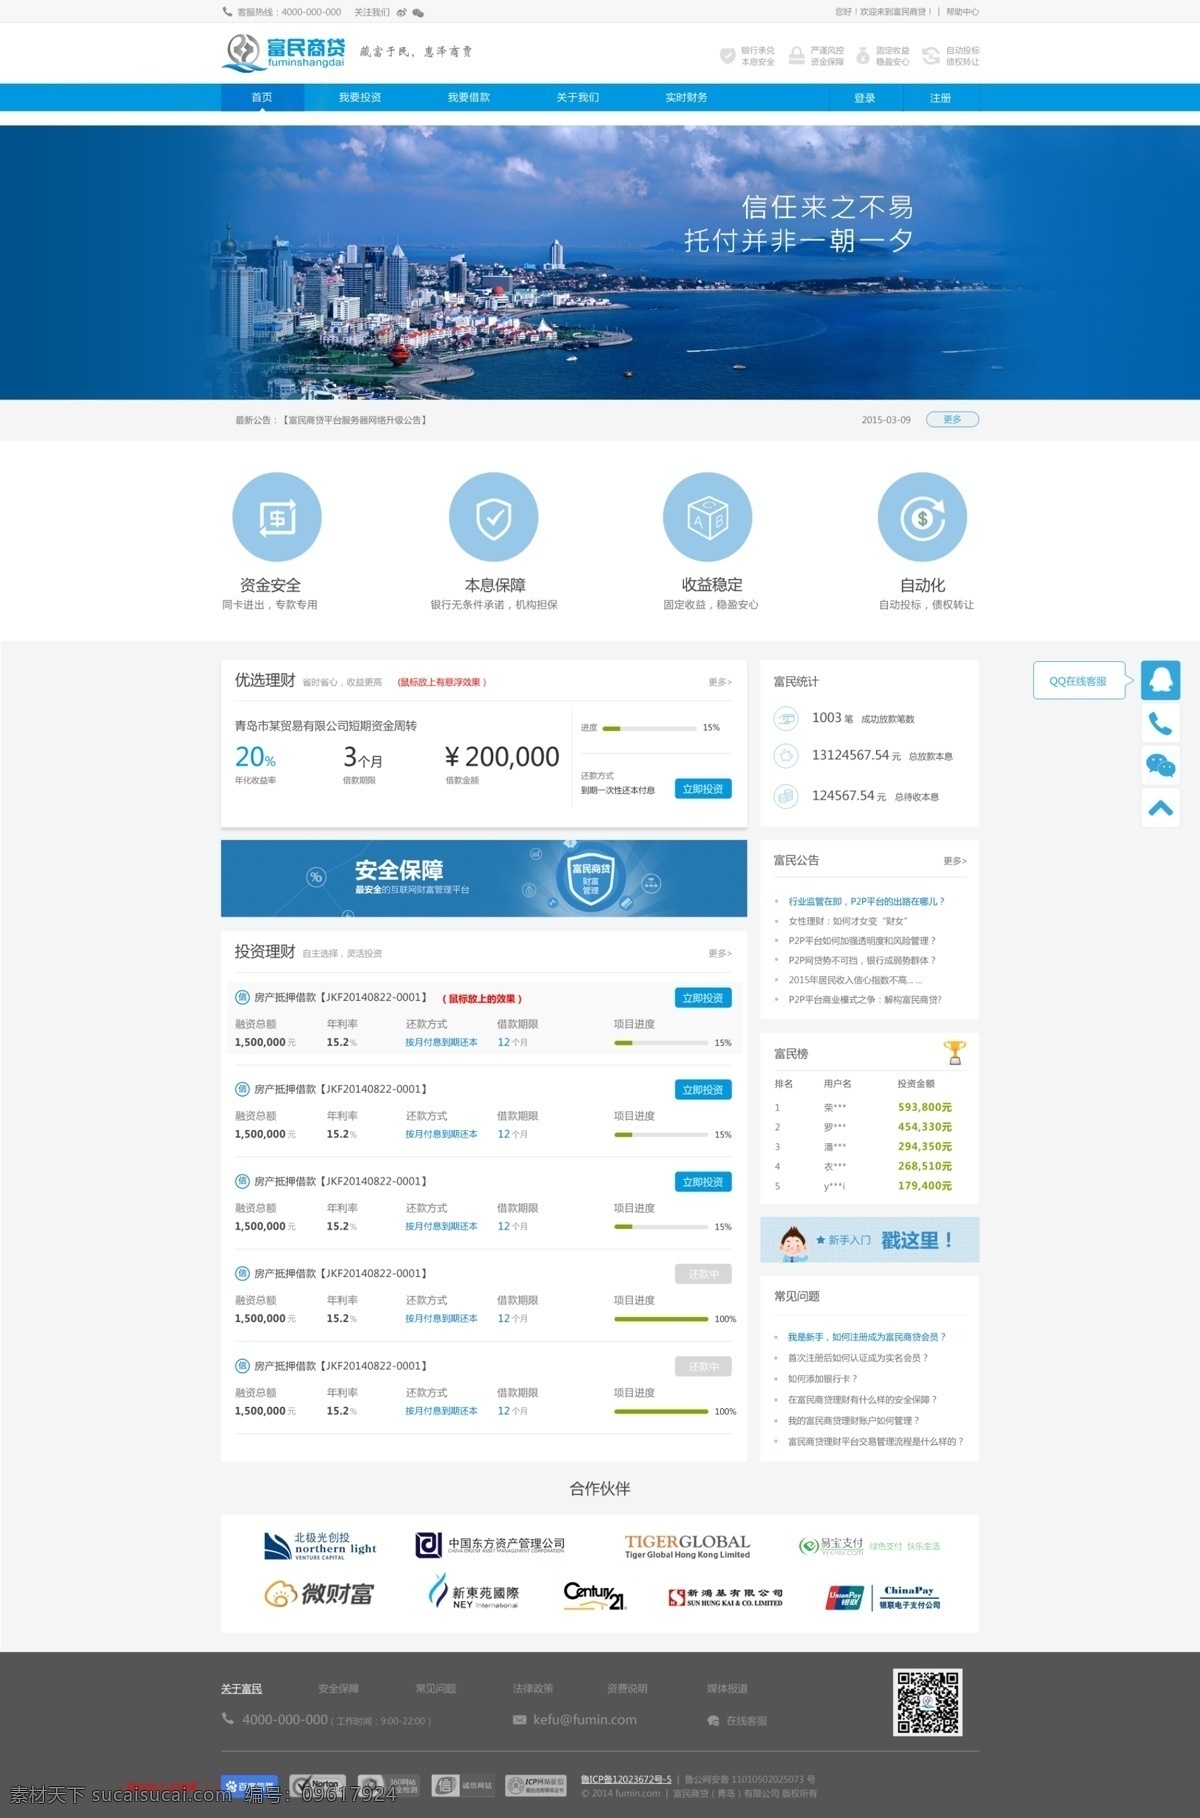 蓝色 投资理财 行业 网站 投资 理财 模板 web 界面设计 中文模板